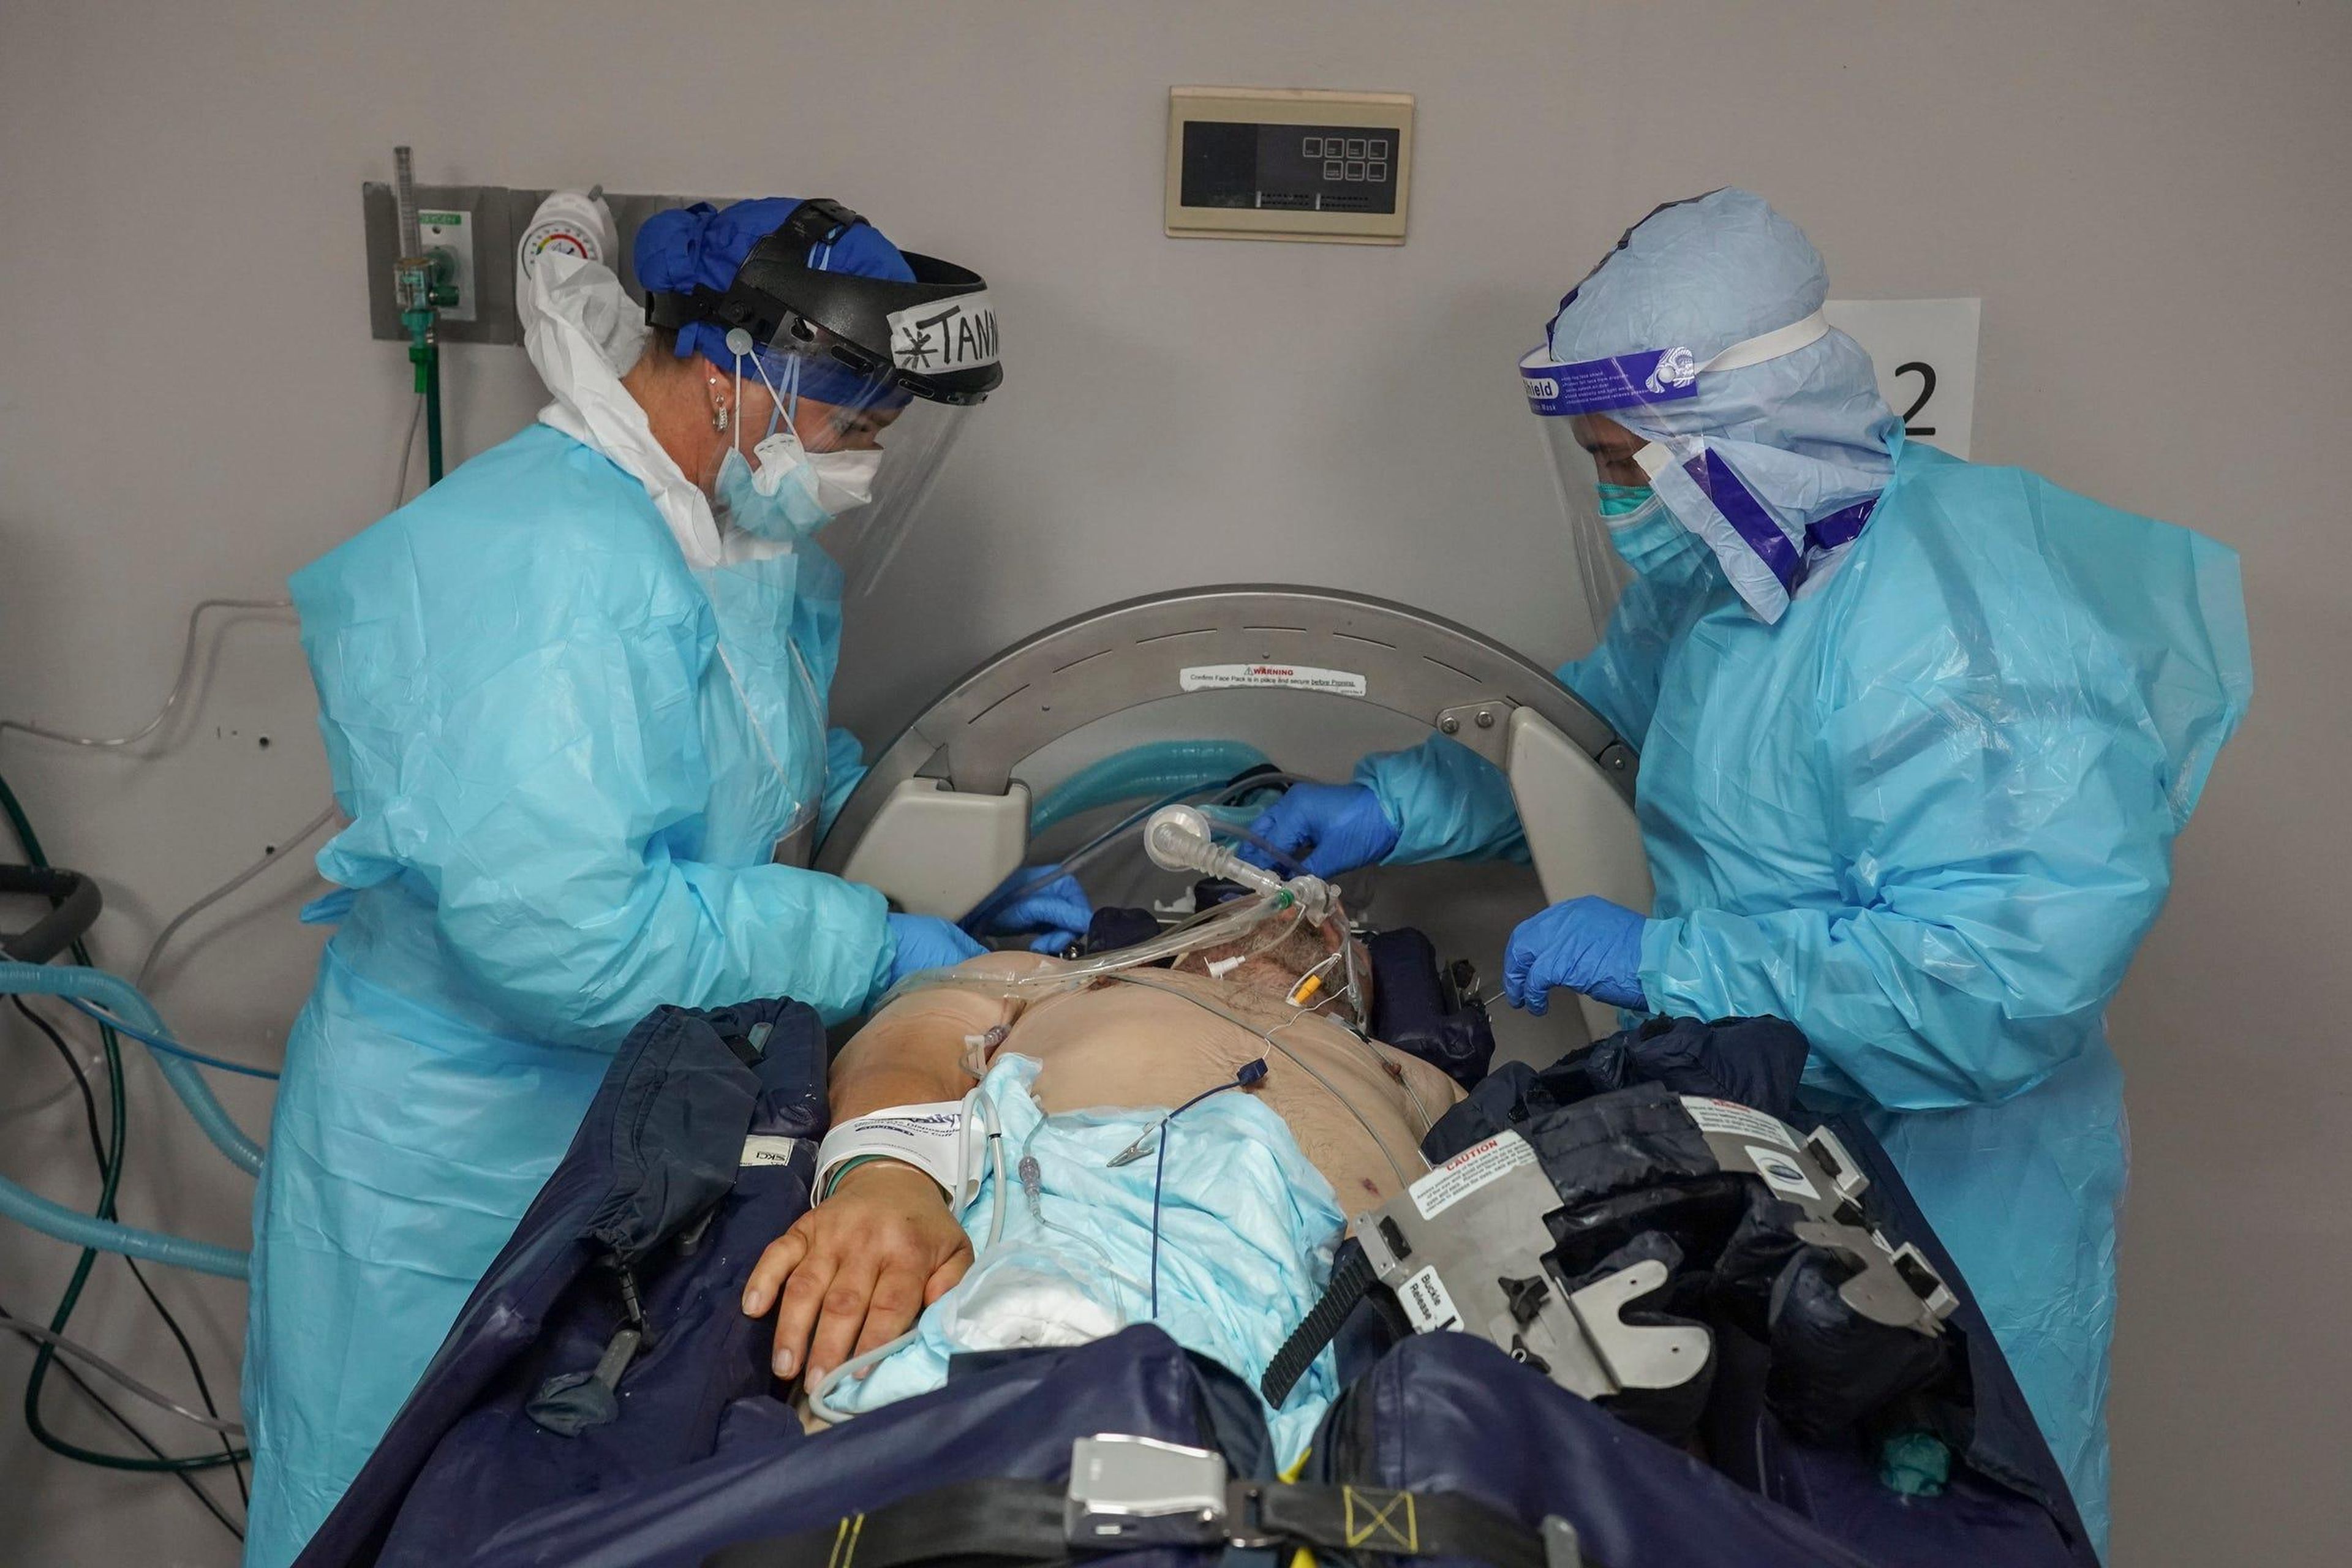 Los miembros del personal médico Tanna Ingraham, izquierda, y Gabriel Cervera Rodríguez, derecha, revisan a un paciente que está en una cama médica giratoria en la UCI COVID-19 en el United Memorial Medical Center en Houston, Texas.